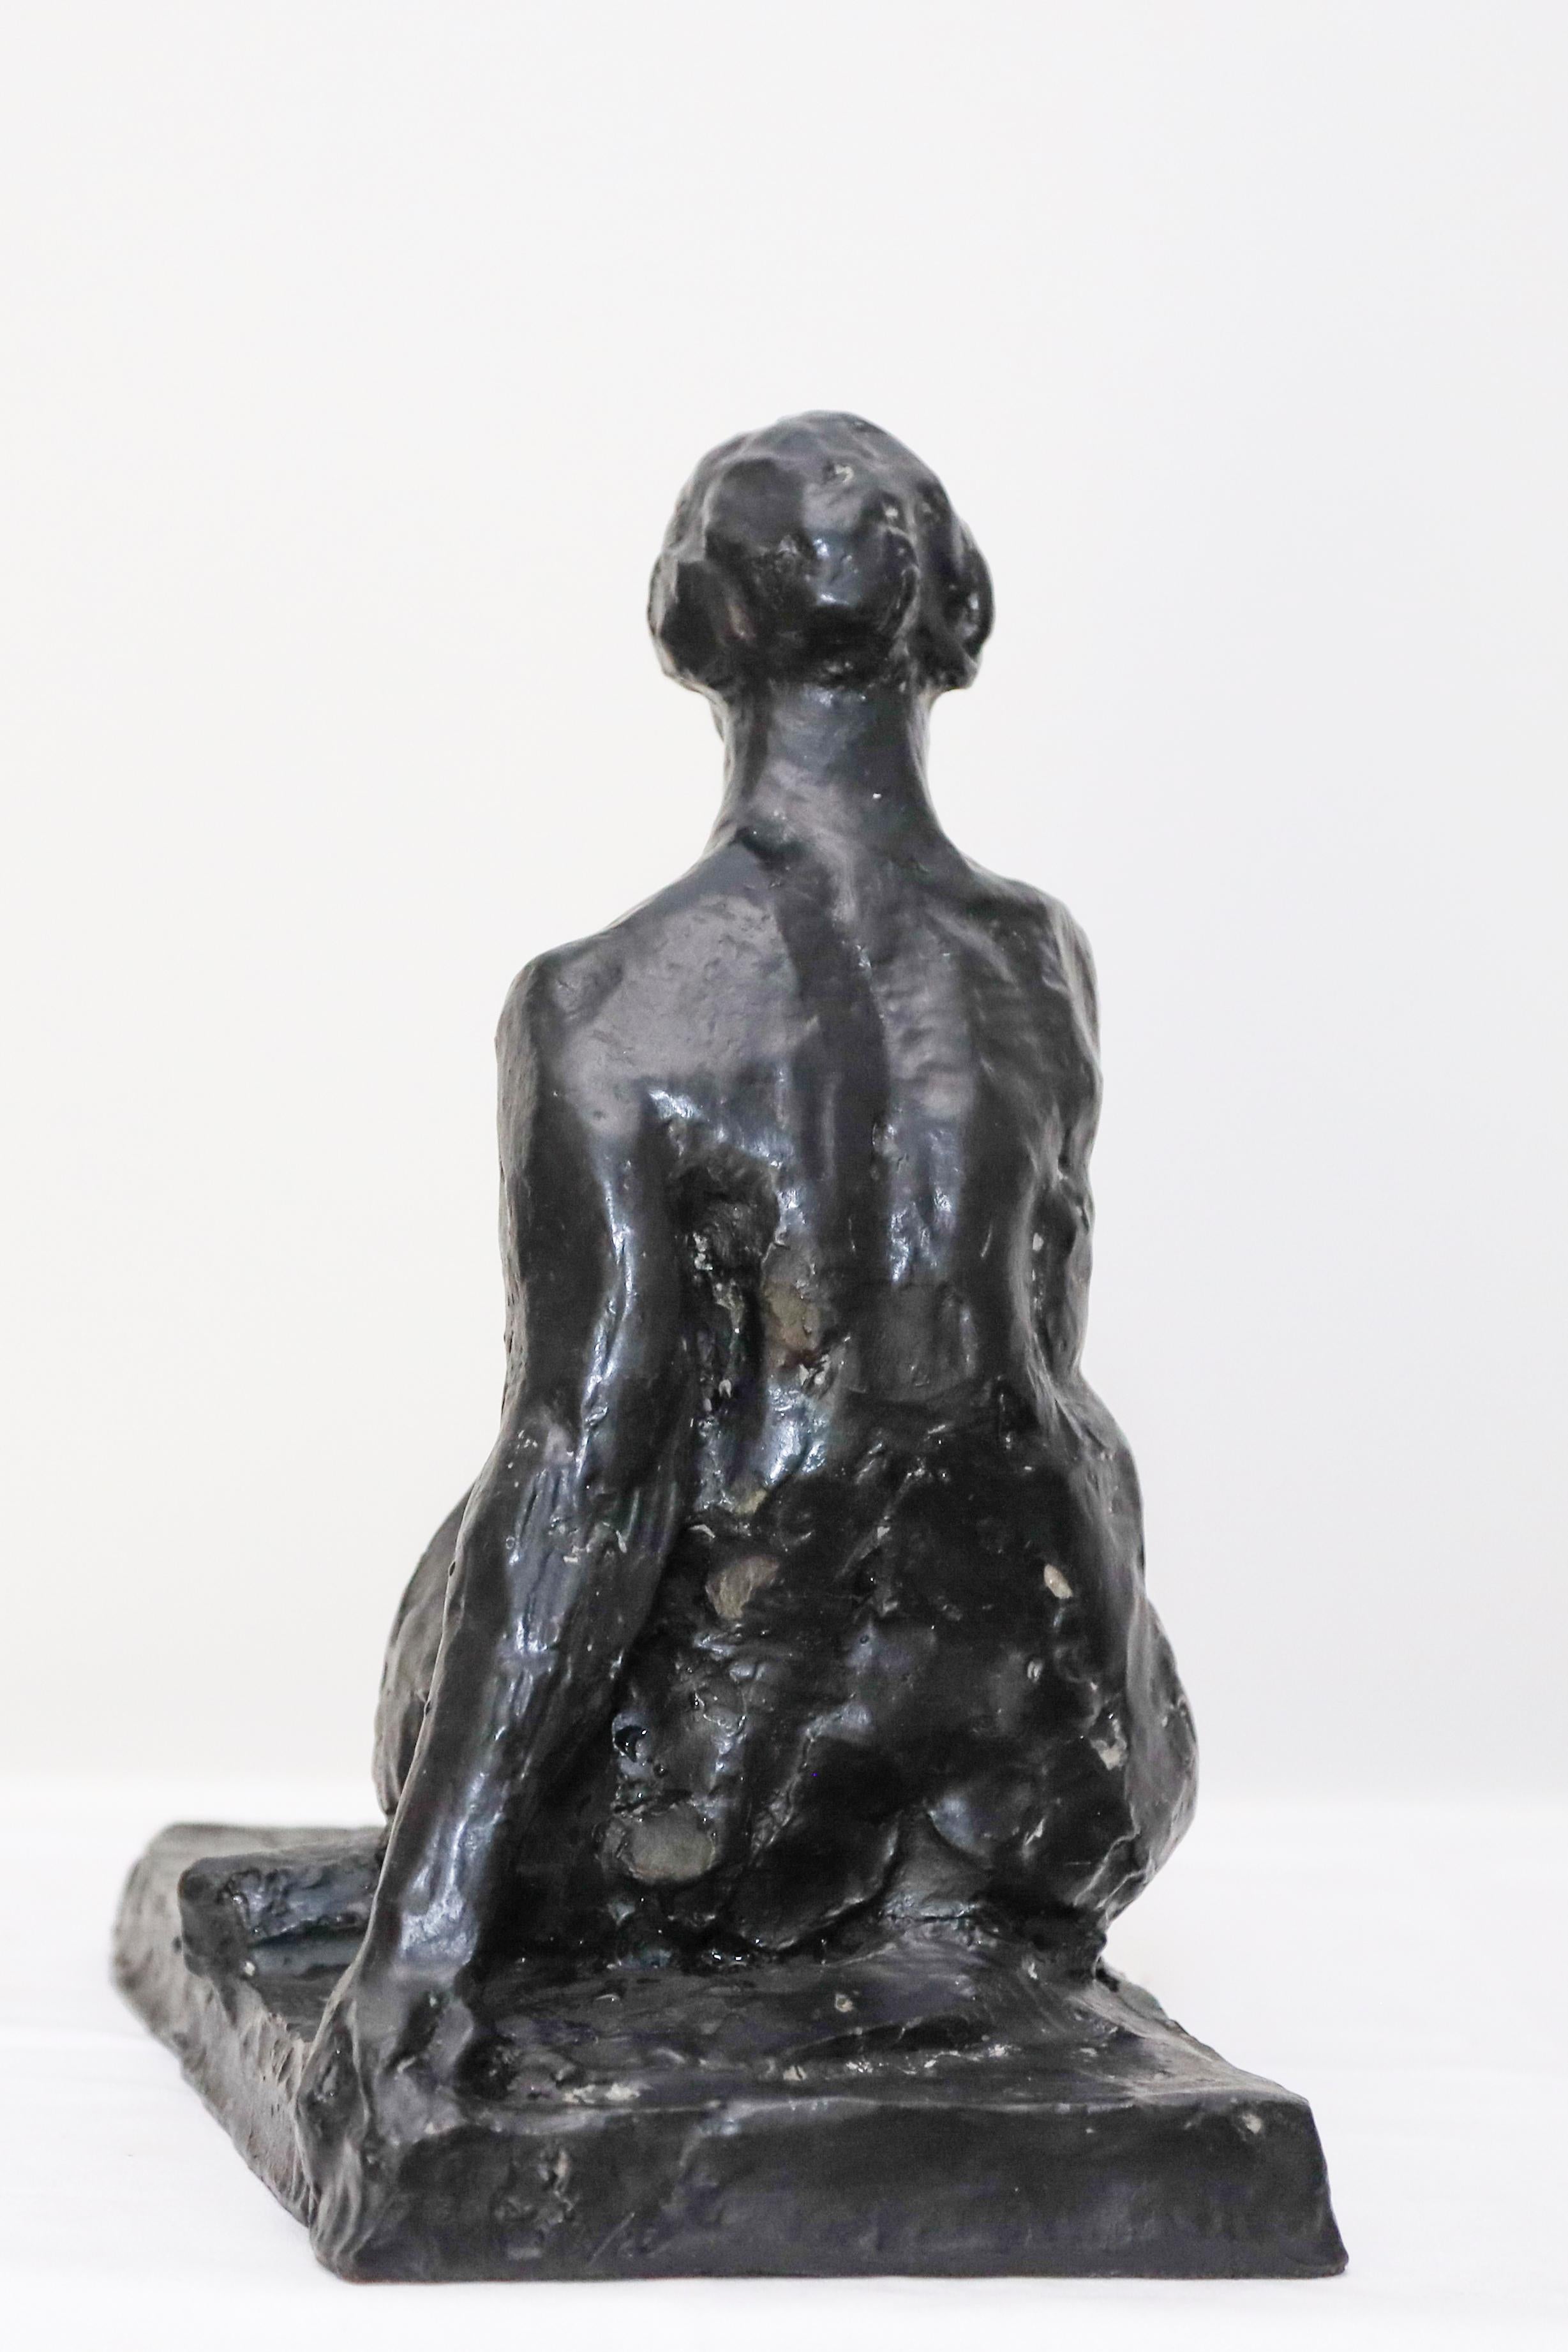 Die Bronzeskulptur einer Frau von Charles Rumsey ist undatiert, entstand aber zu einem Zeitpunkt in seiner Karriere, als er begann, vom Realismus zu moderneren, lockereren Frauendarstellungen und sogar zu seinen Tierskulpturen überzugehen.    Dies